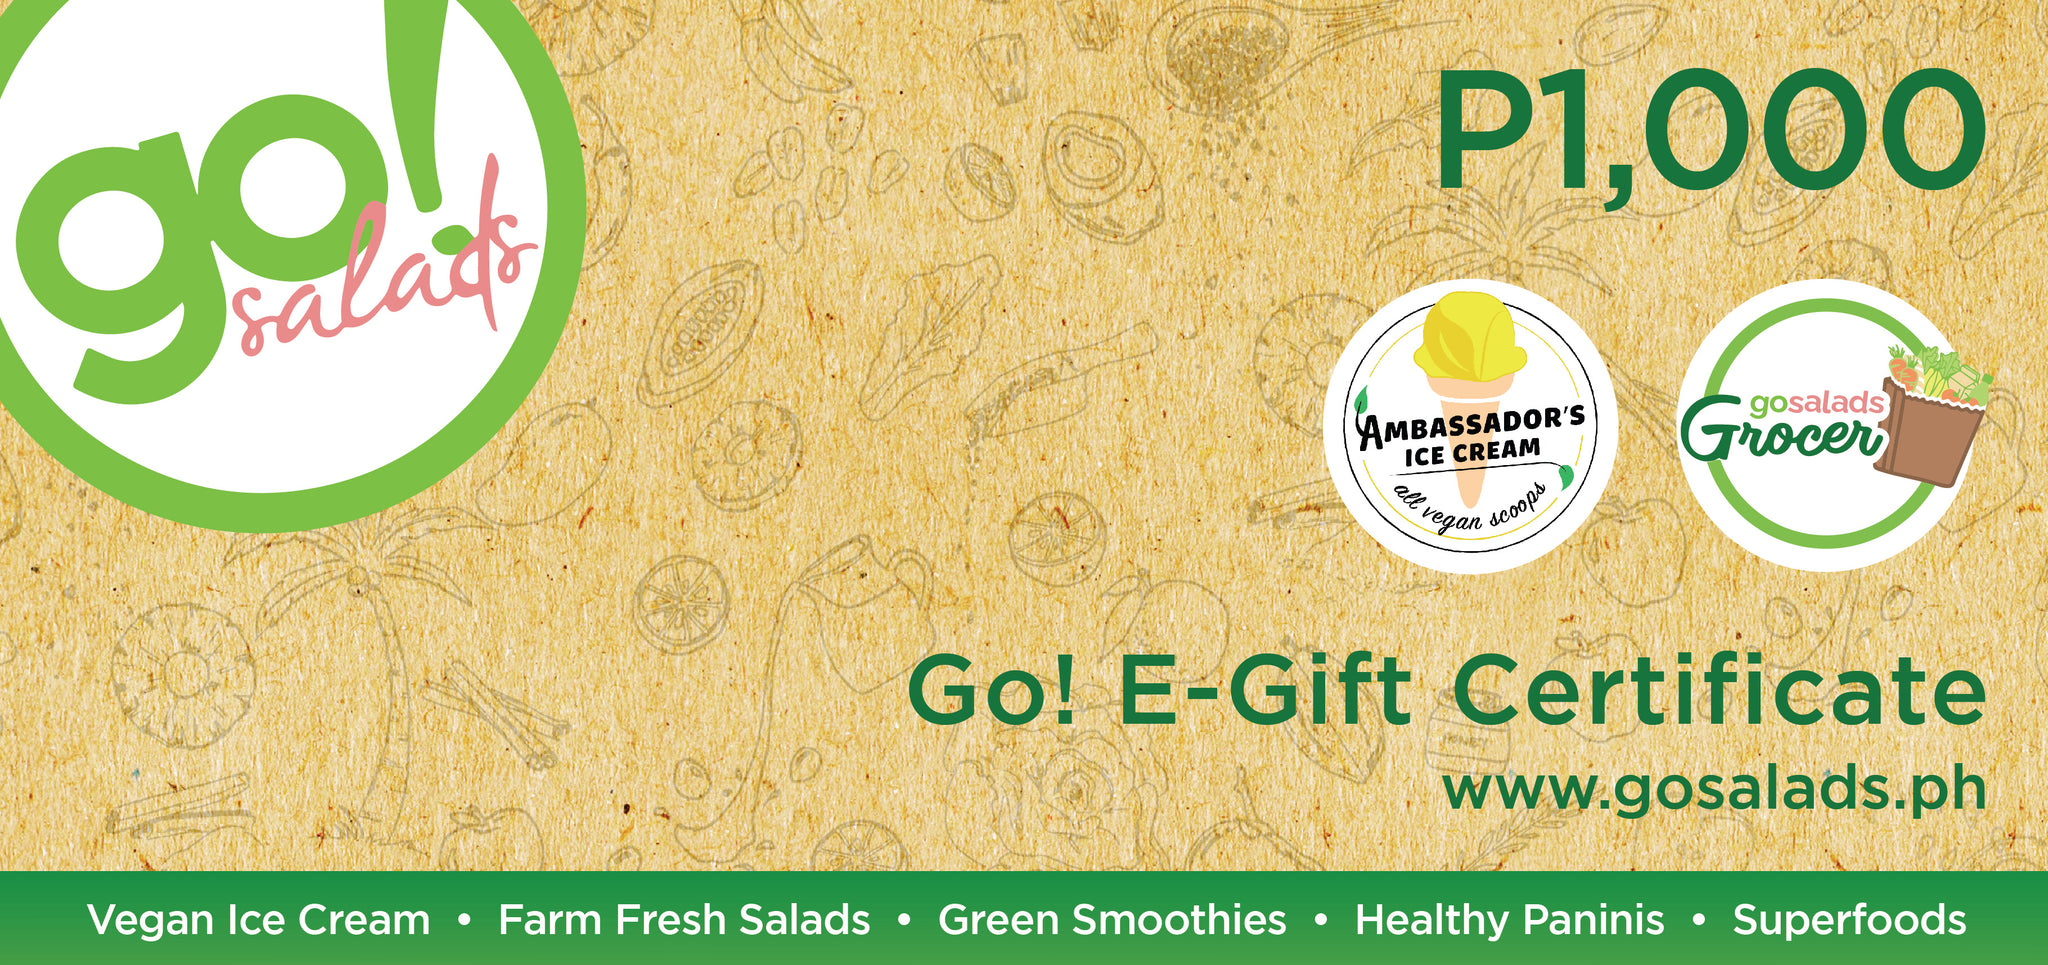 Go! Salads E-Gift Certificate ₱1,000 - Go! Salads Grocer